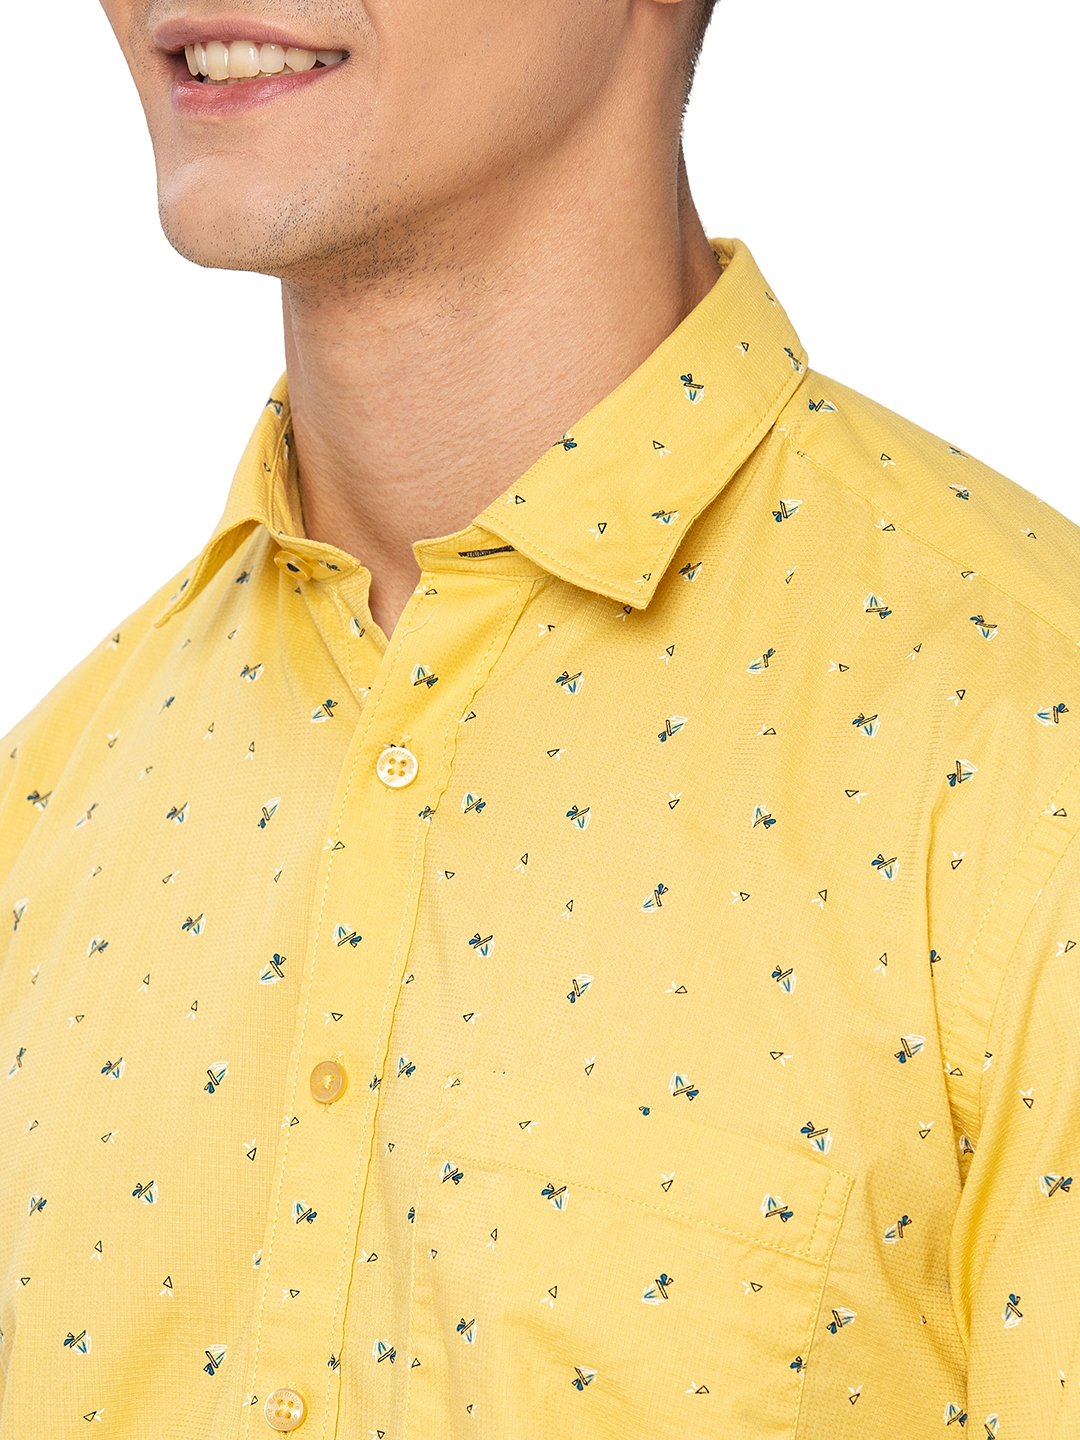 Greenfibre | Lemon Yellow Printed Slim Fit Casual Shirt | Greenfibre 4